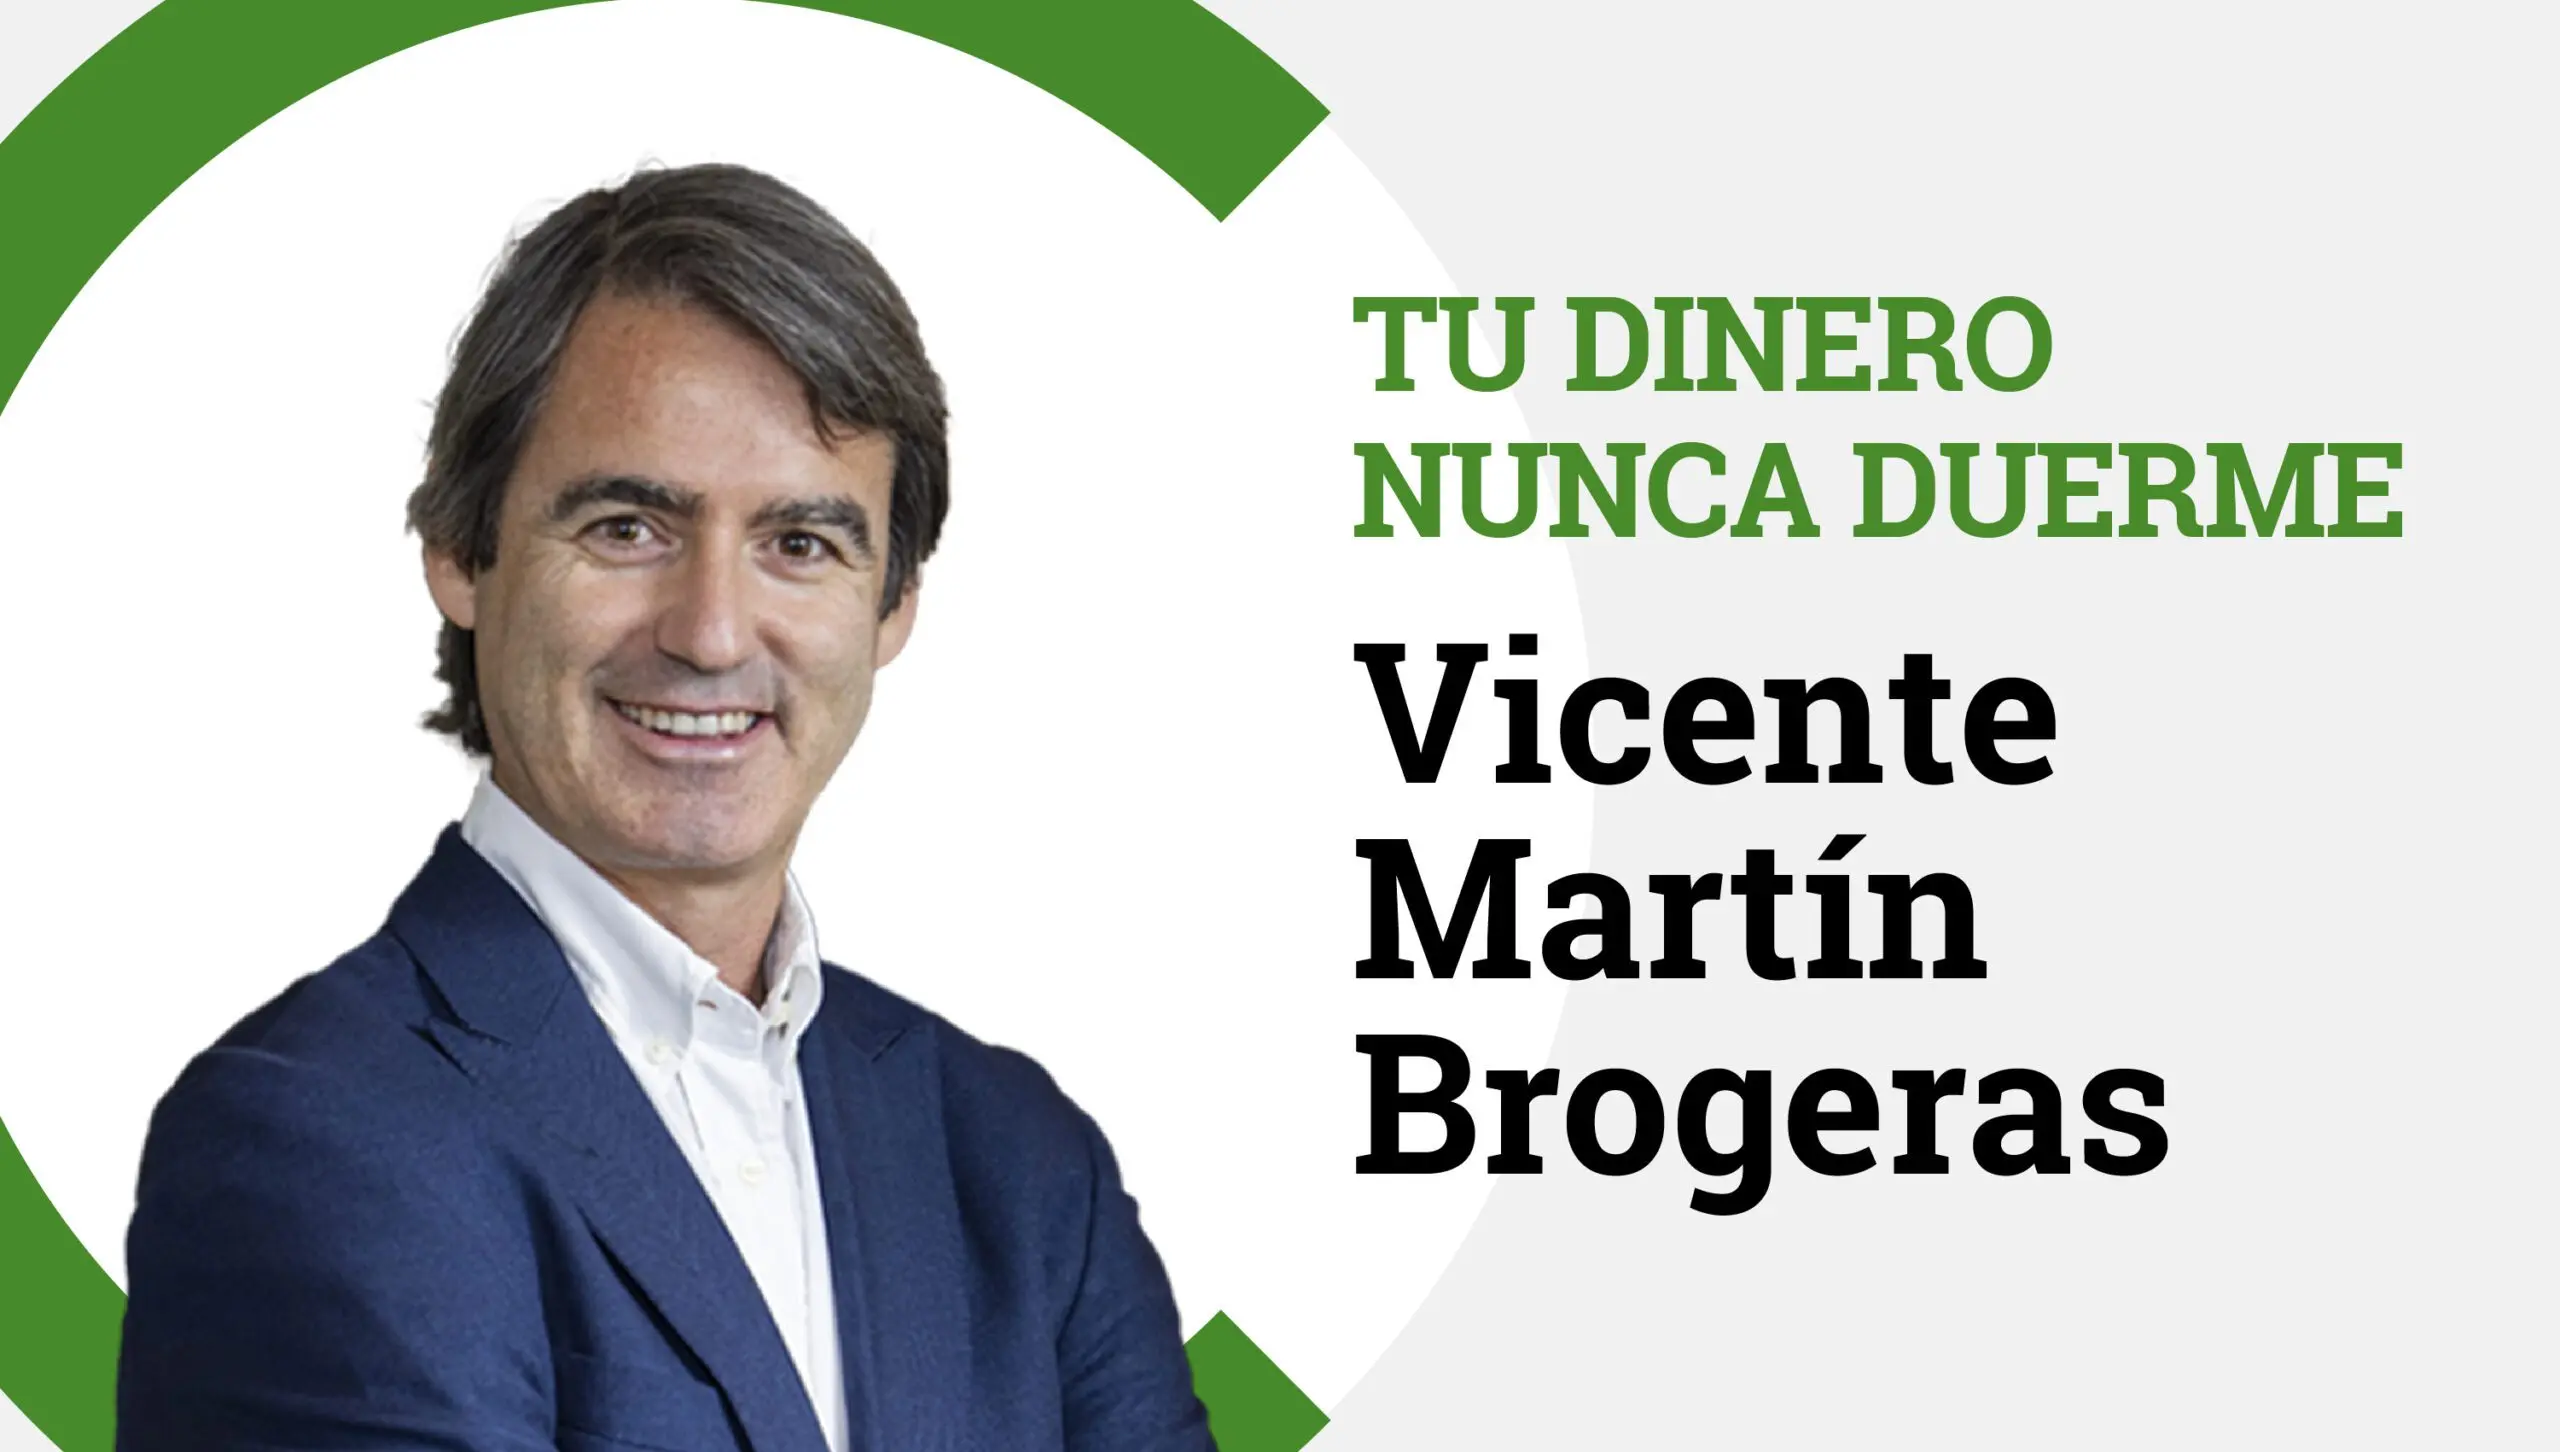 Vicente-Martin-Brogueras en Tu Dinero Nunca Duerme